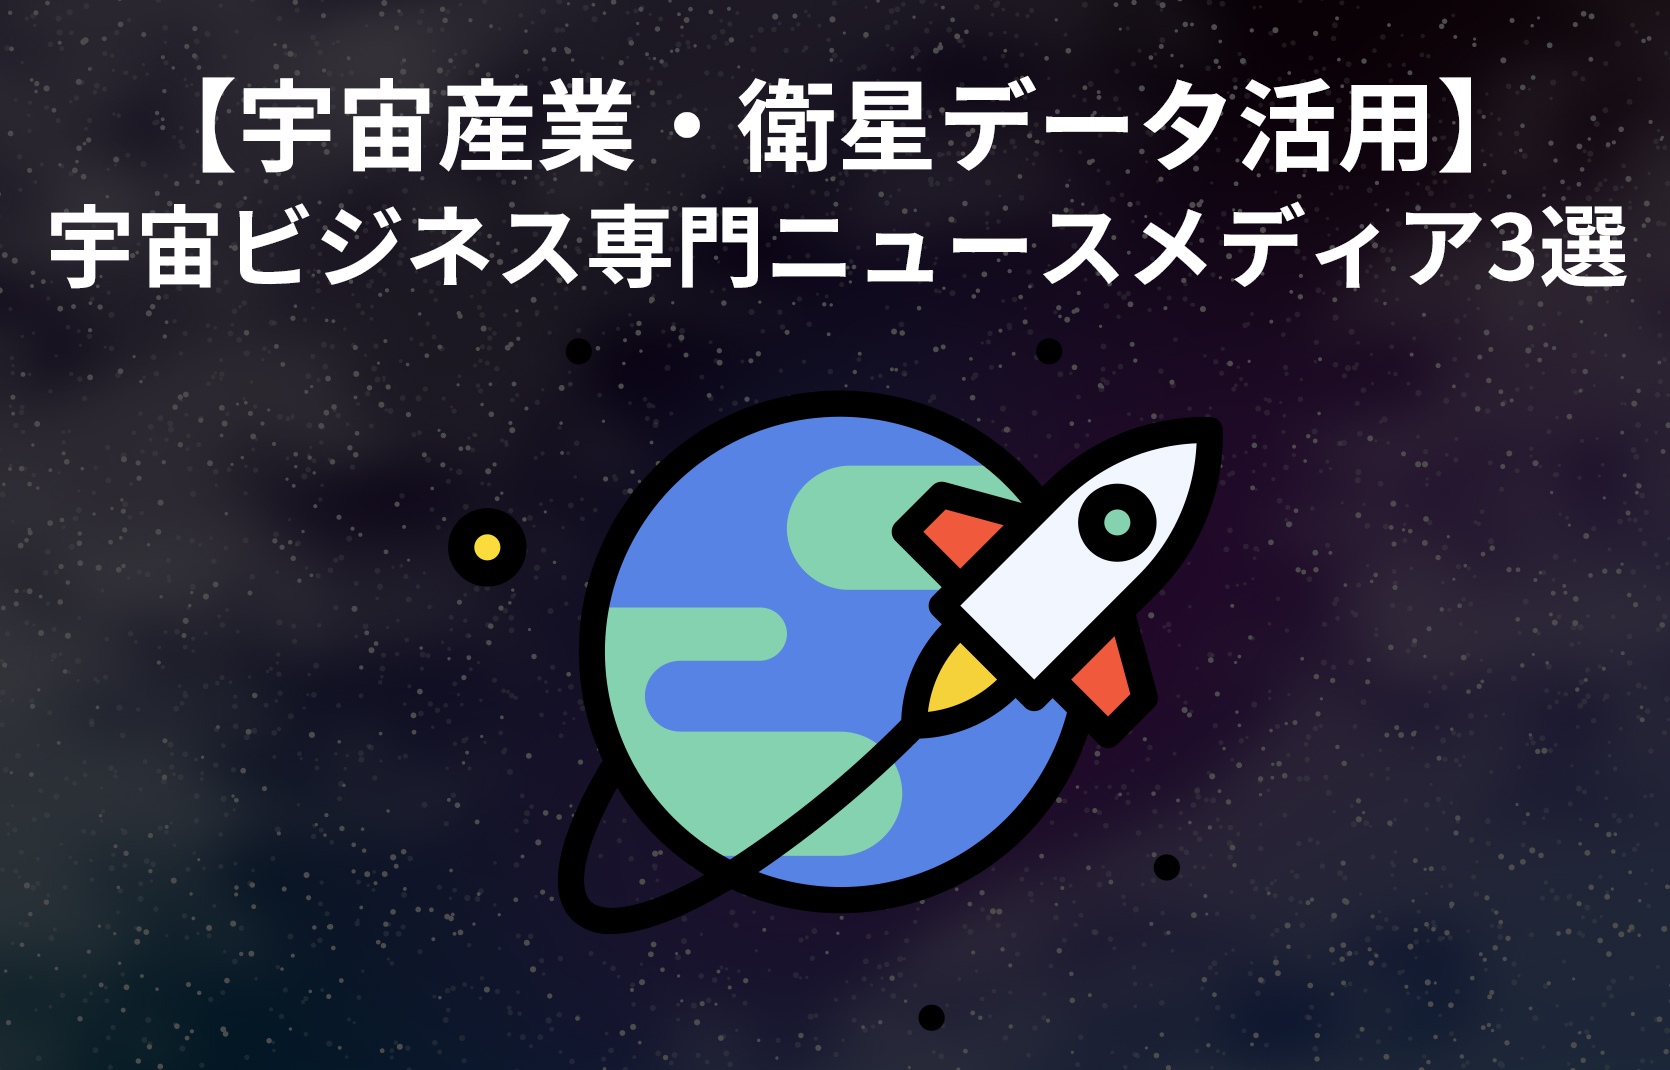 【宇宙産業・衛星データ活用】宇宙ビジネス専門ニュースメディア3選